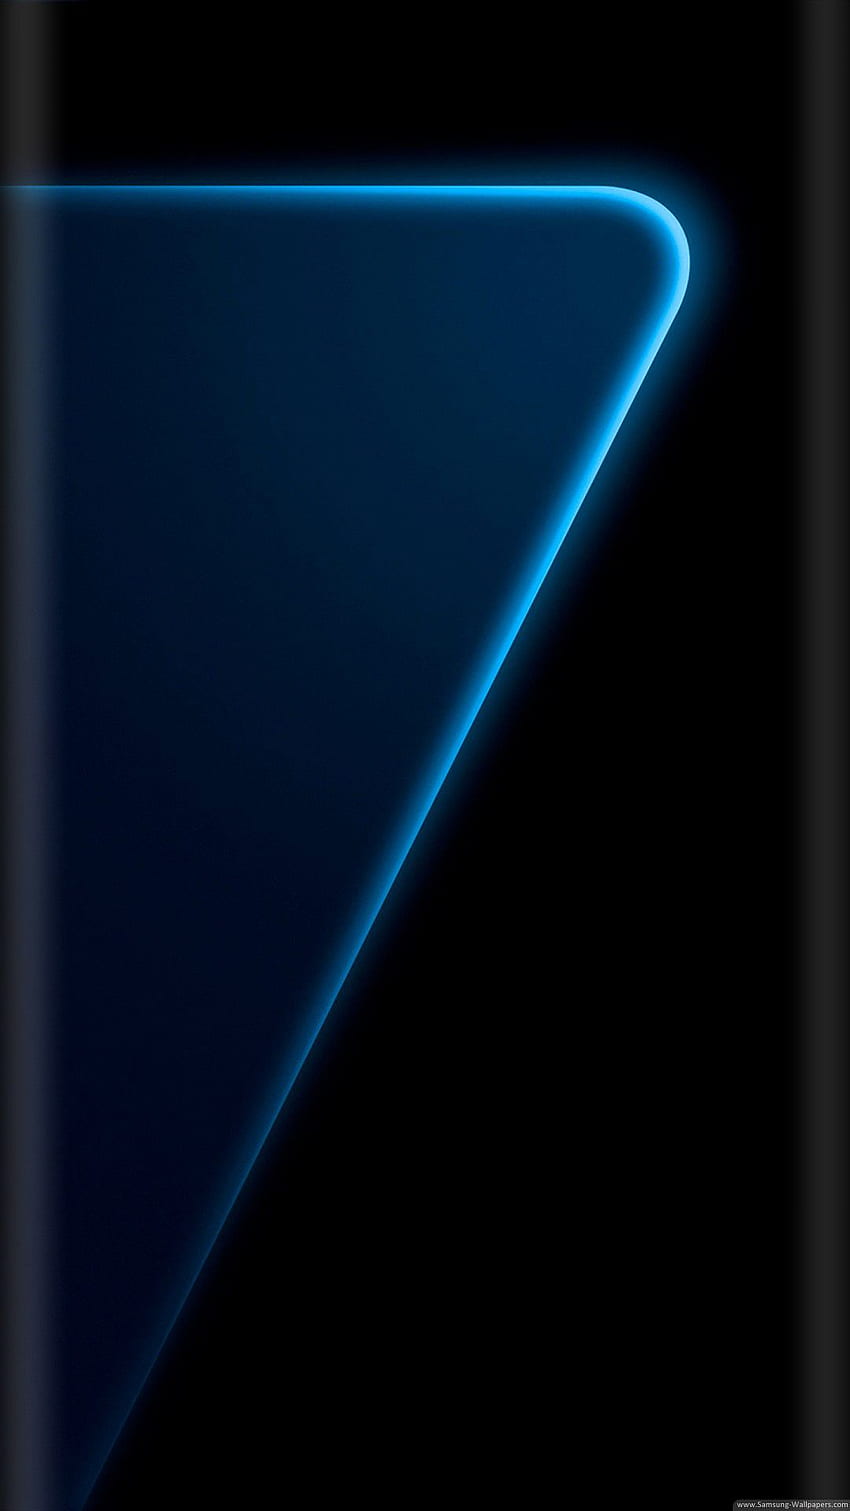 Làm mới màn hình khóa cho Samsung S7 của bạn với các bức ảnh hình nền lock screen huyền thoại. Bạn sẽ phát hiện ra những mẫu thiết kế tuyệt đẹp và độc đáo, giúp cho thiết bị của bạn thêm phần ấn tượng và sang trọng hơn.